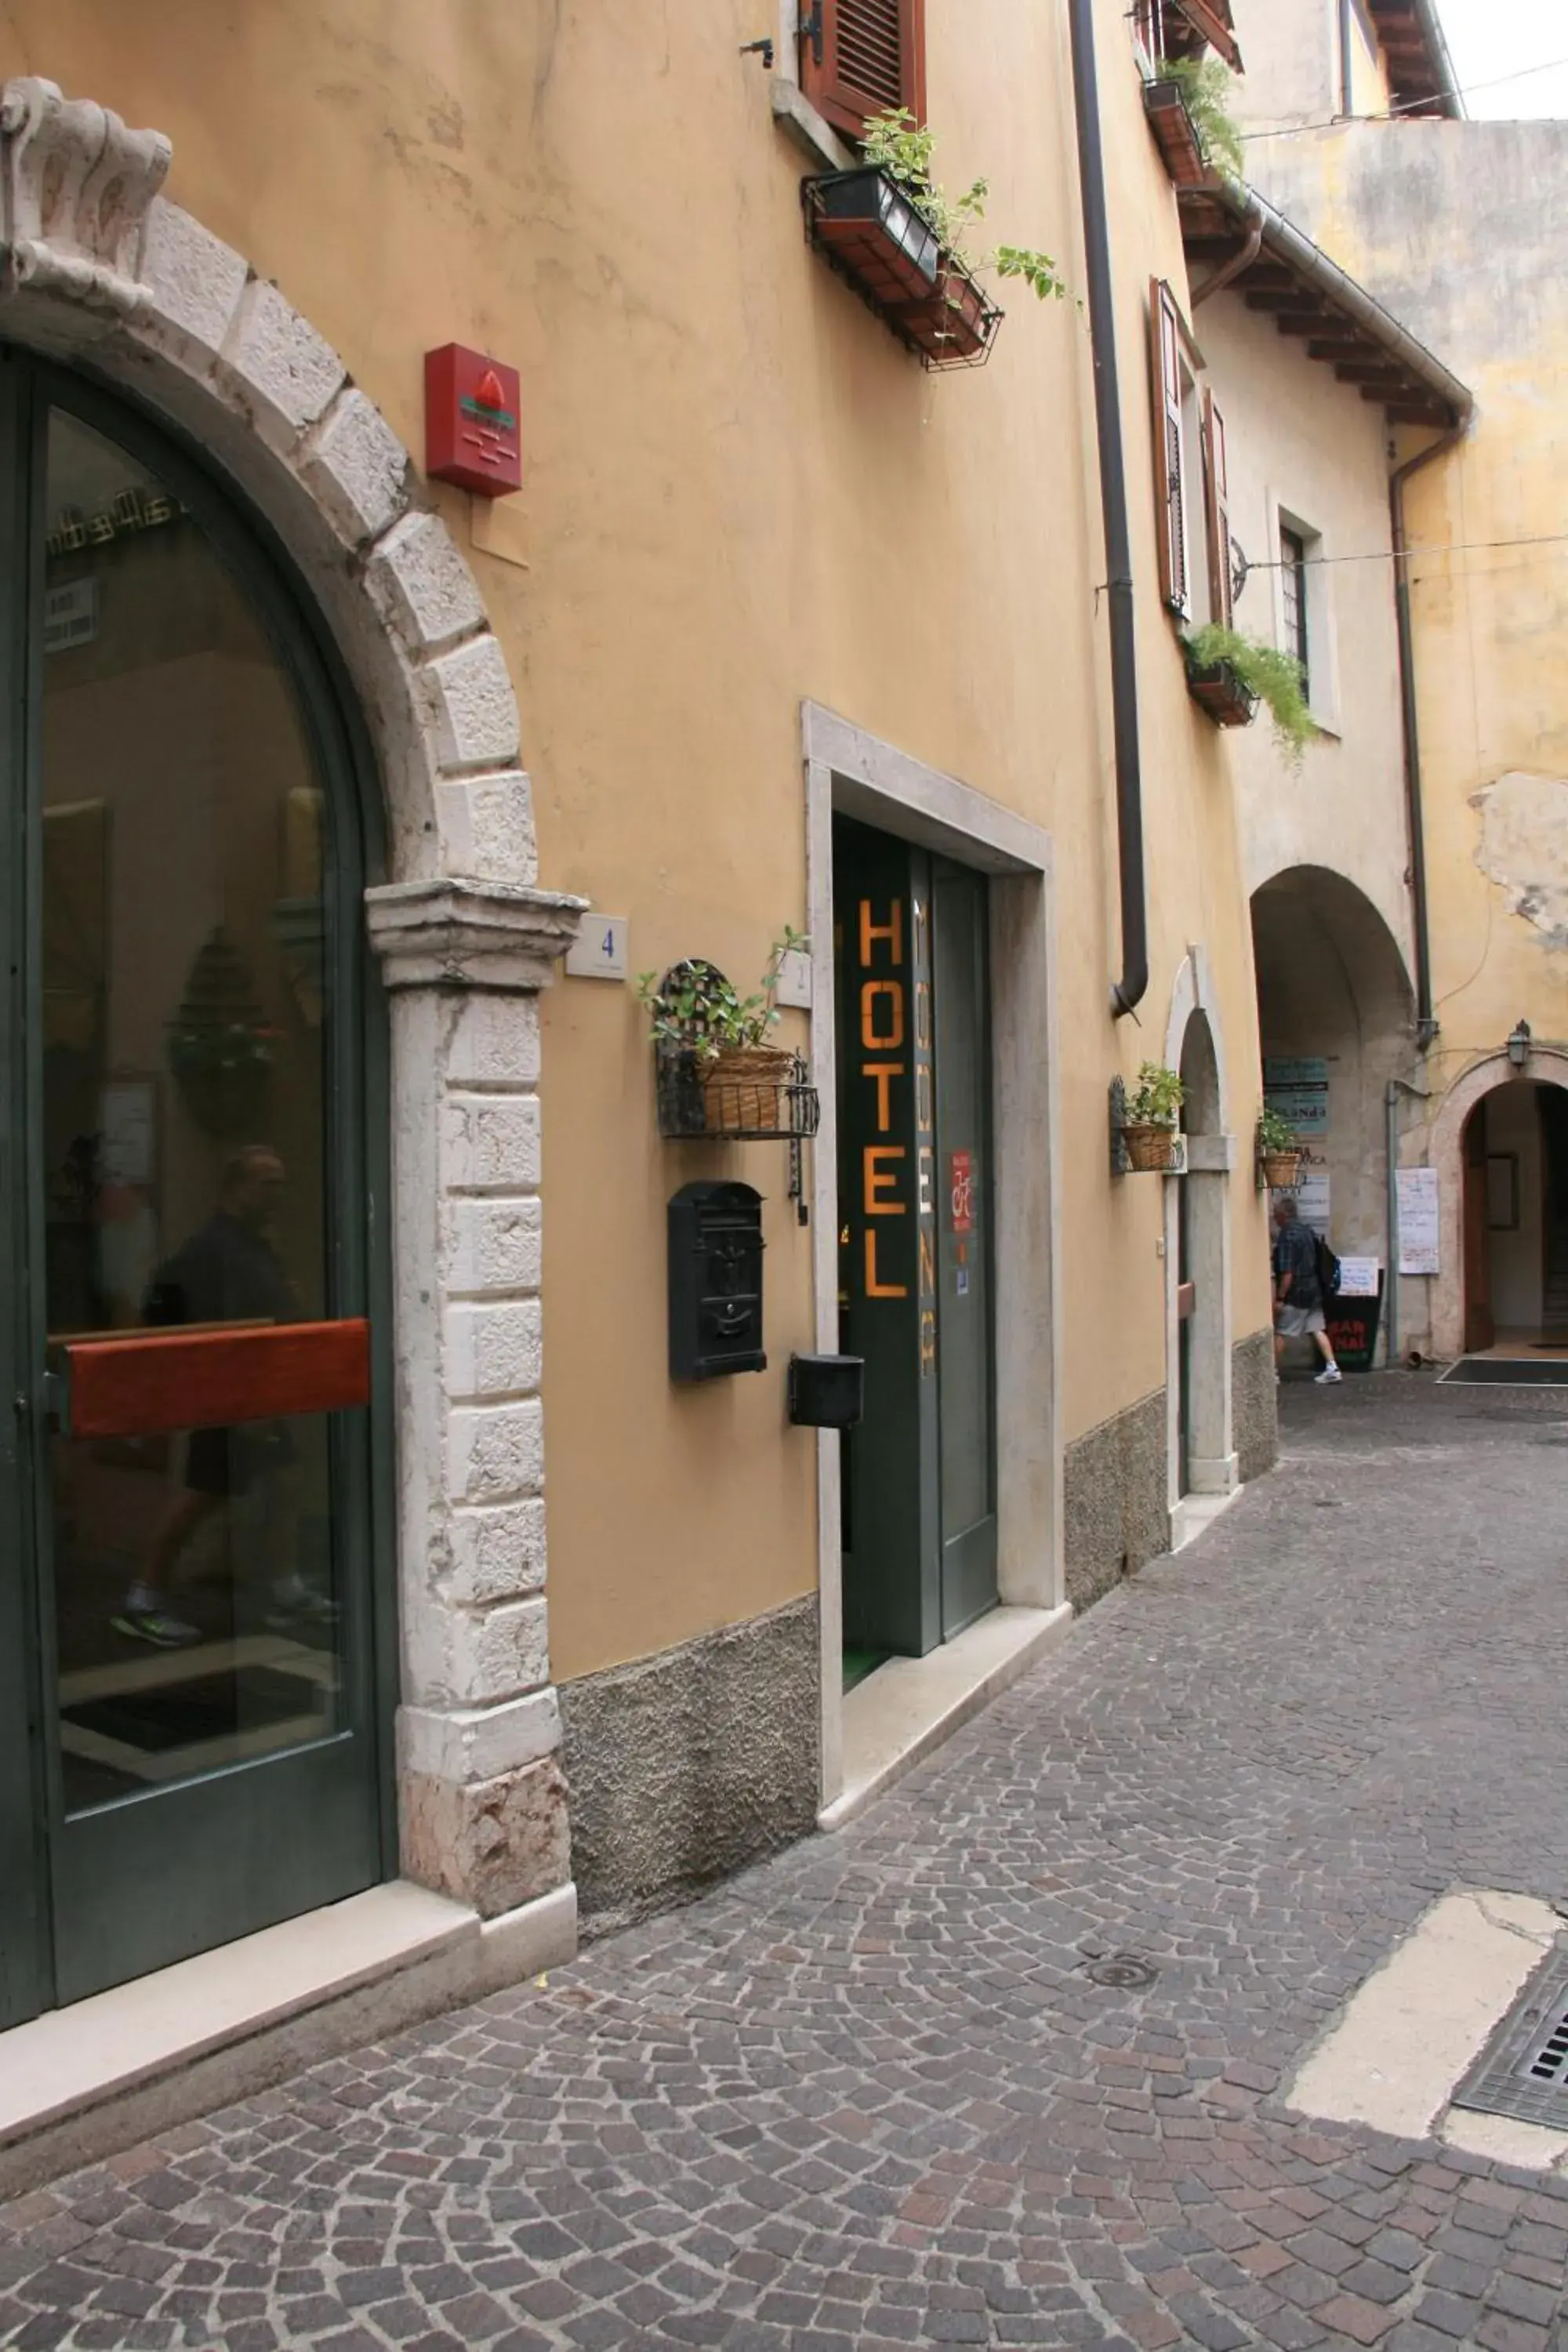 Facade/Entrance in Hotel Modena